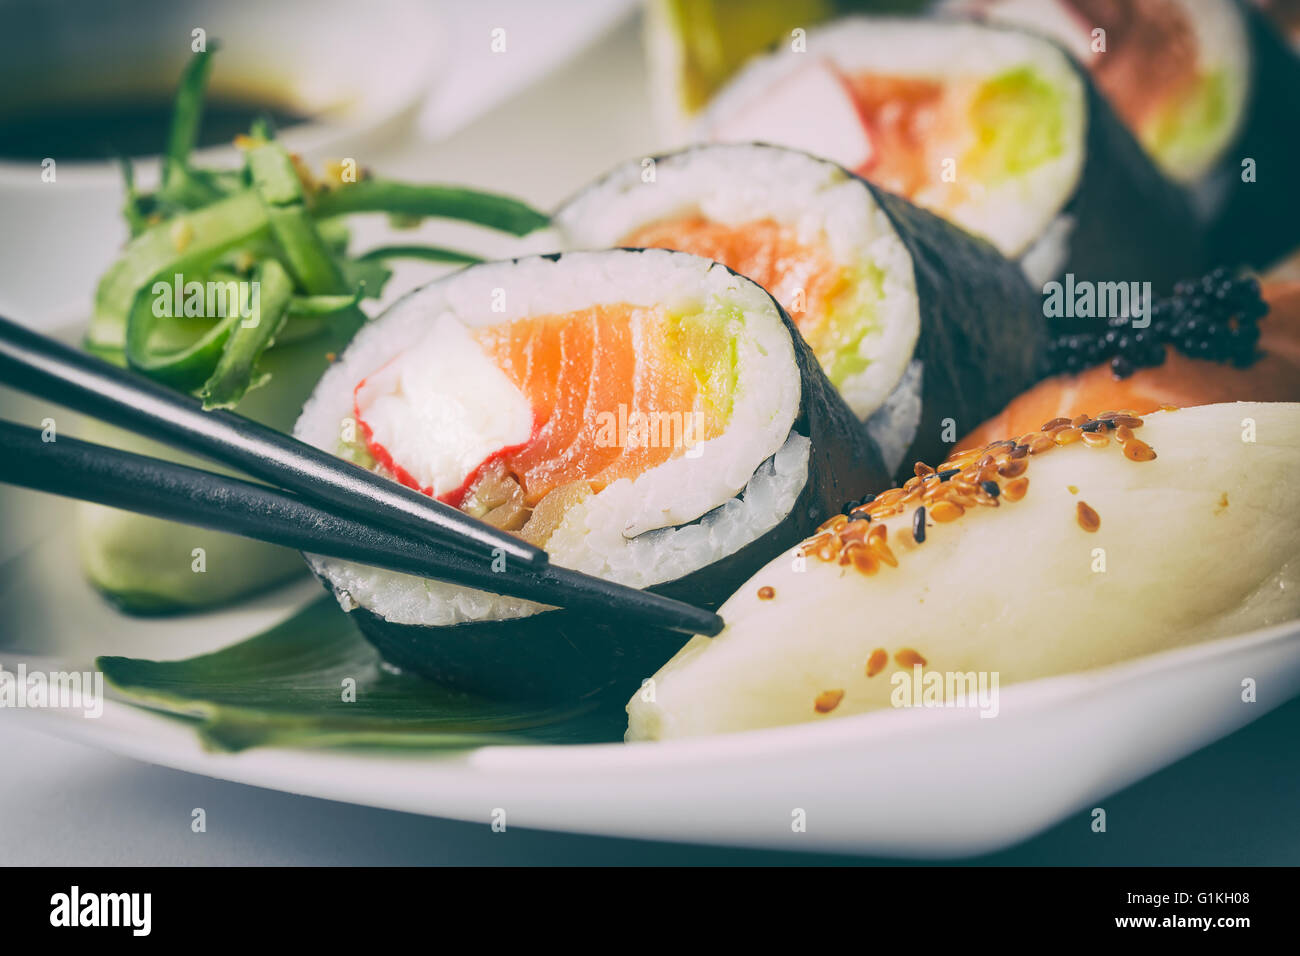 Rotolo di sushi materie makki cibi freschi frutti di mare susi - immagine di stock Foto Stock